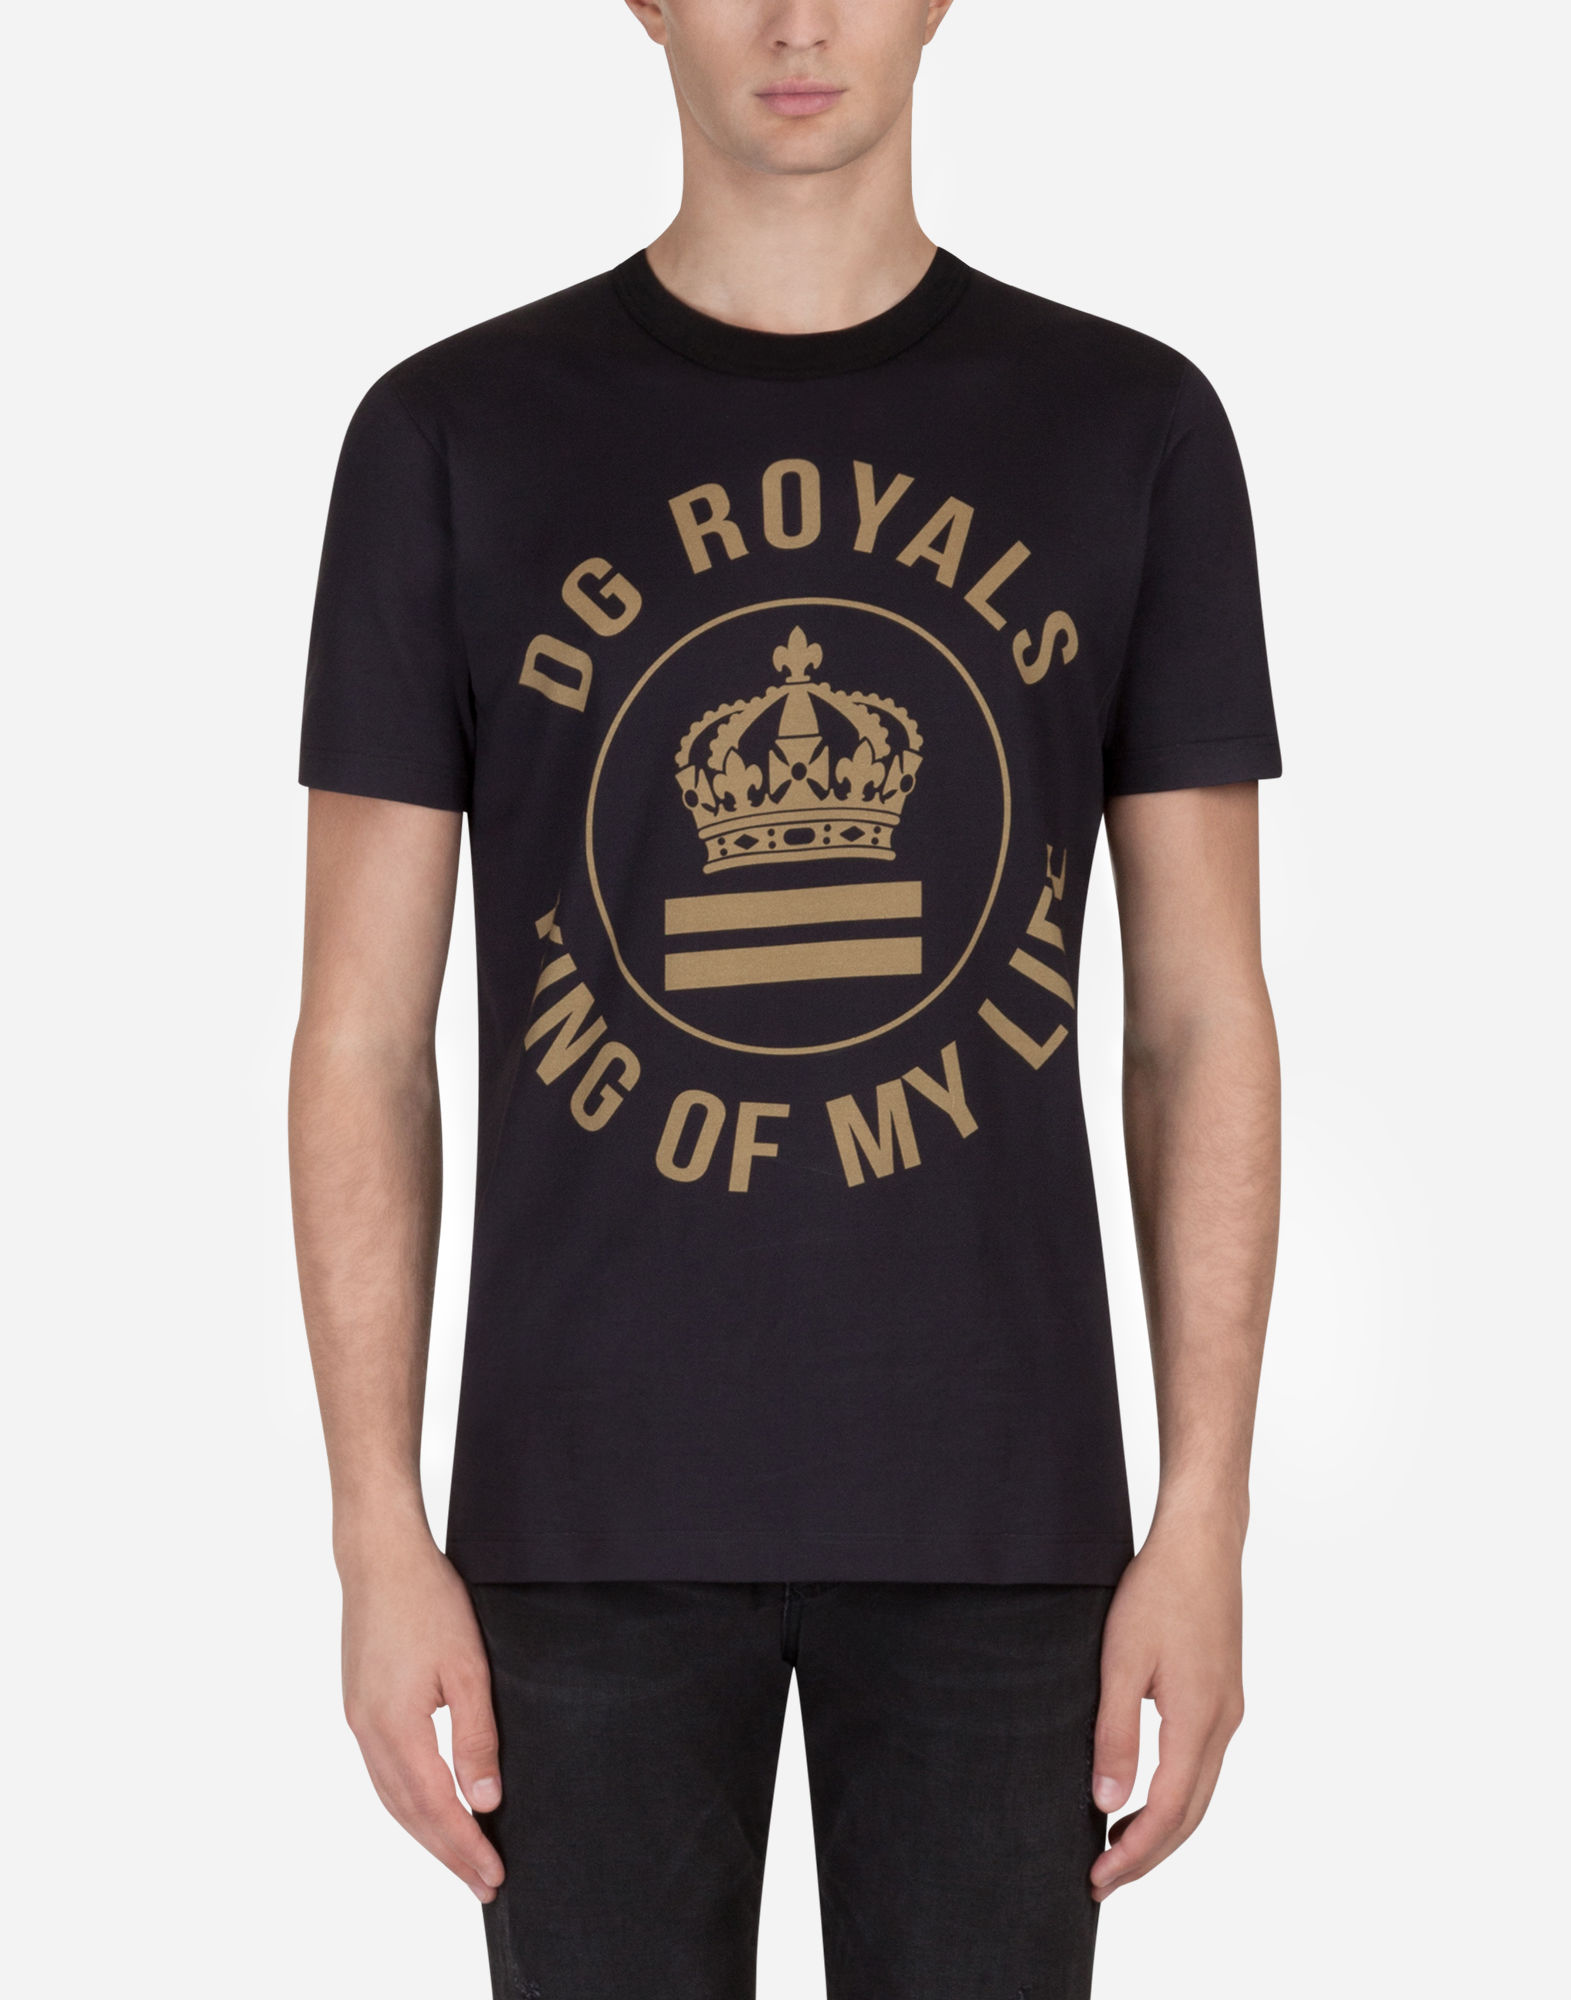 dg royals t shirt